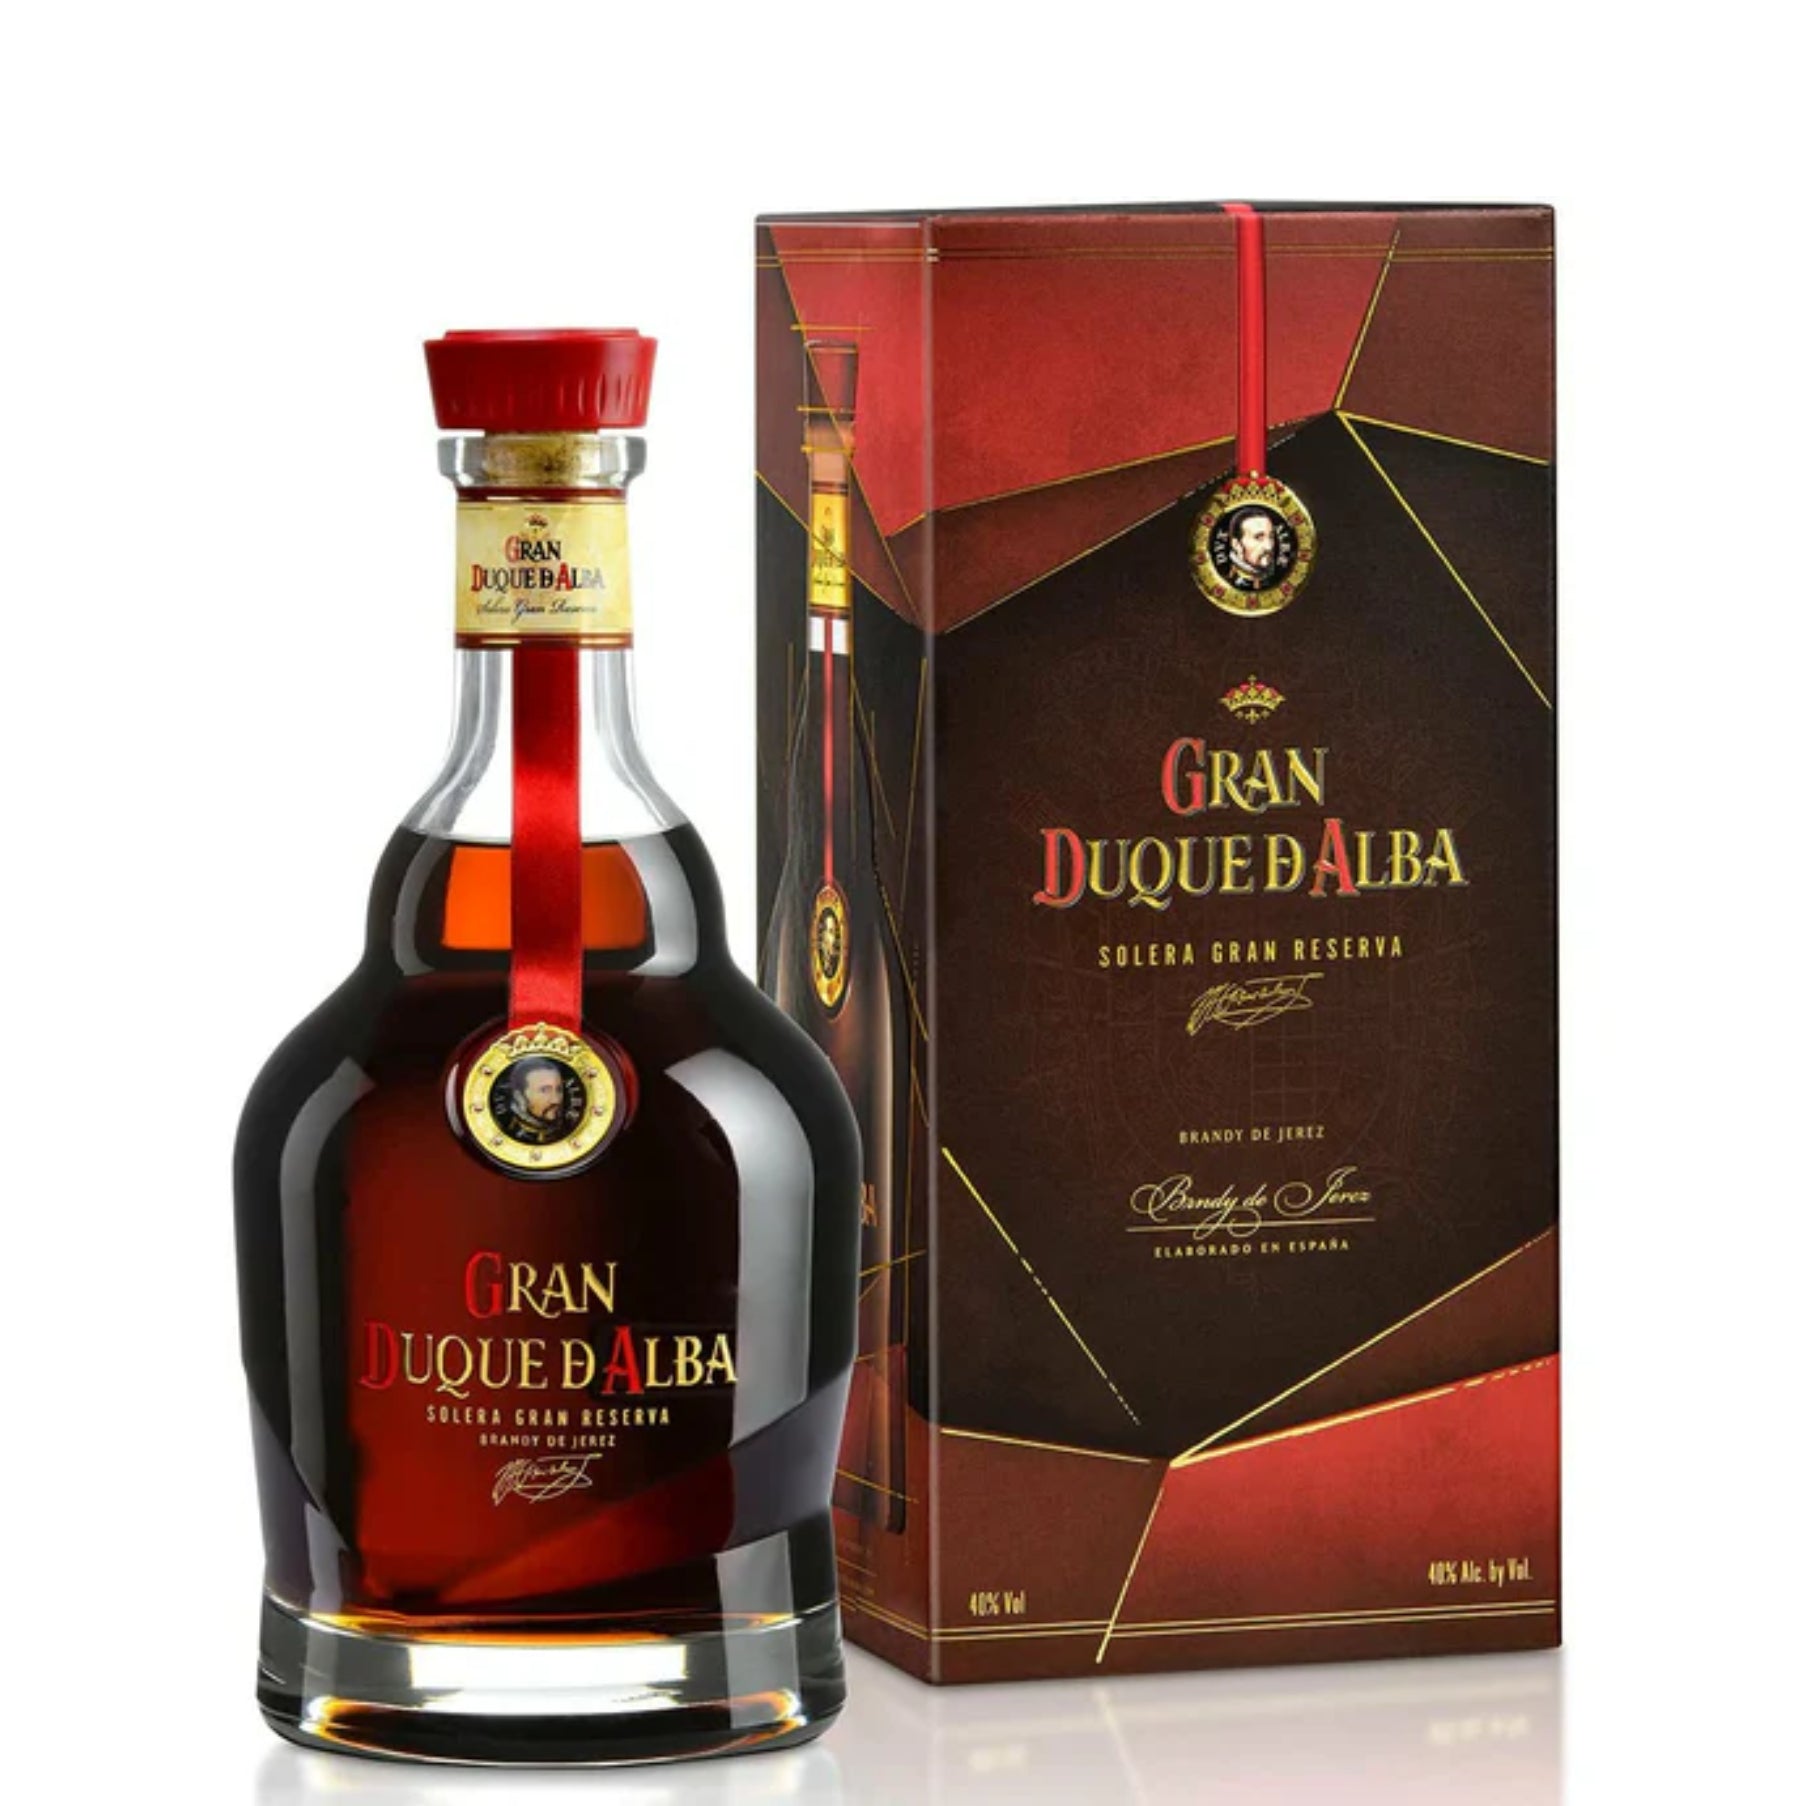 Gran Duque D'Alba Solera Gran Reserva Brandy 750ml | ShopSK